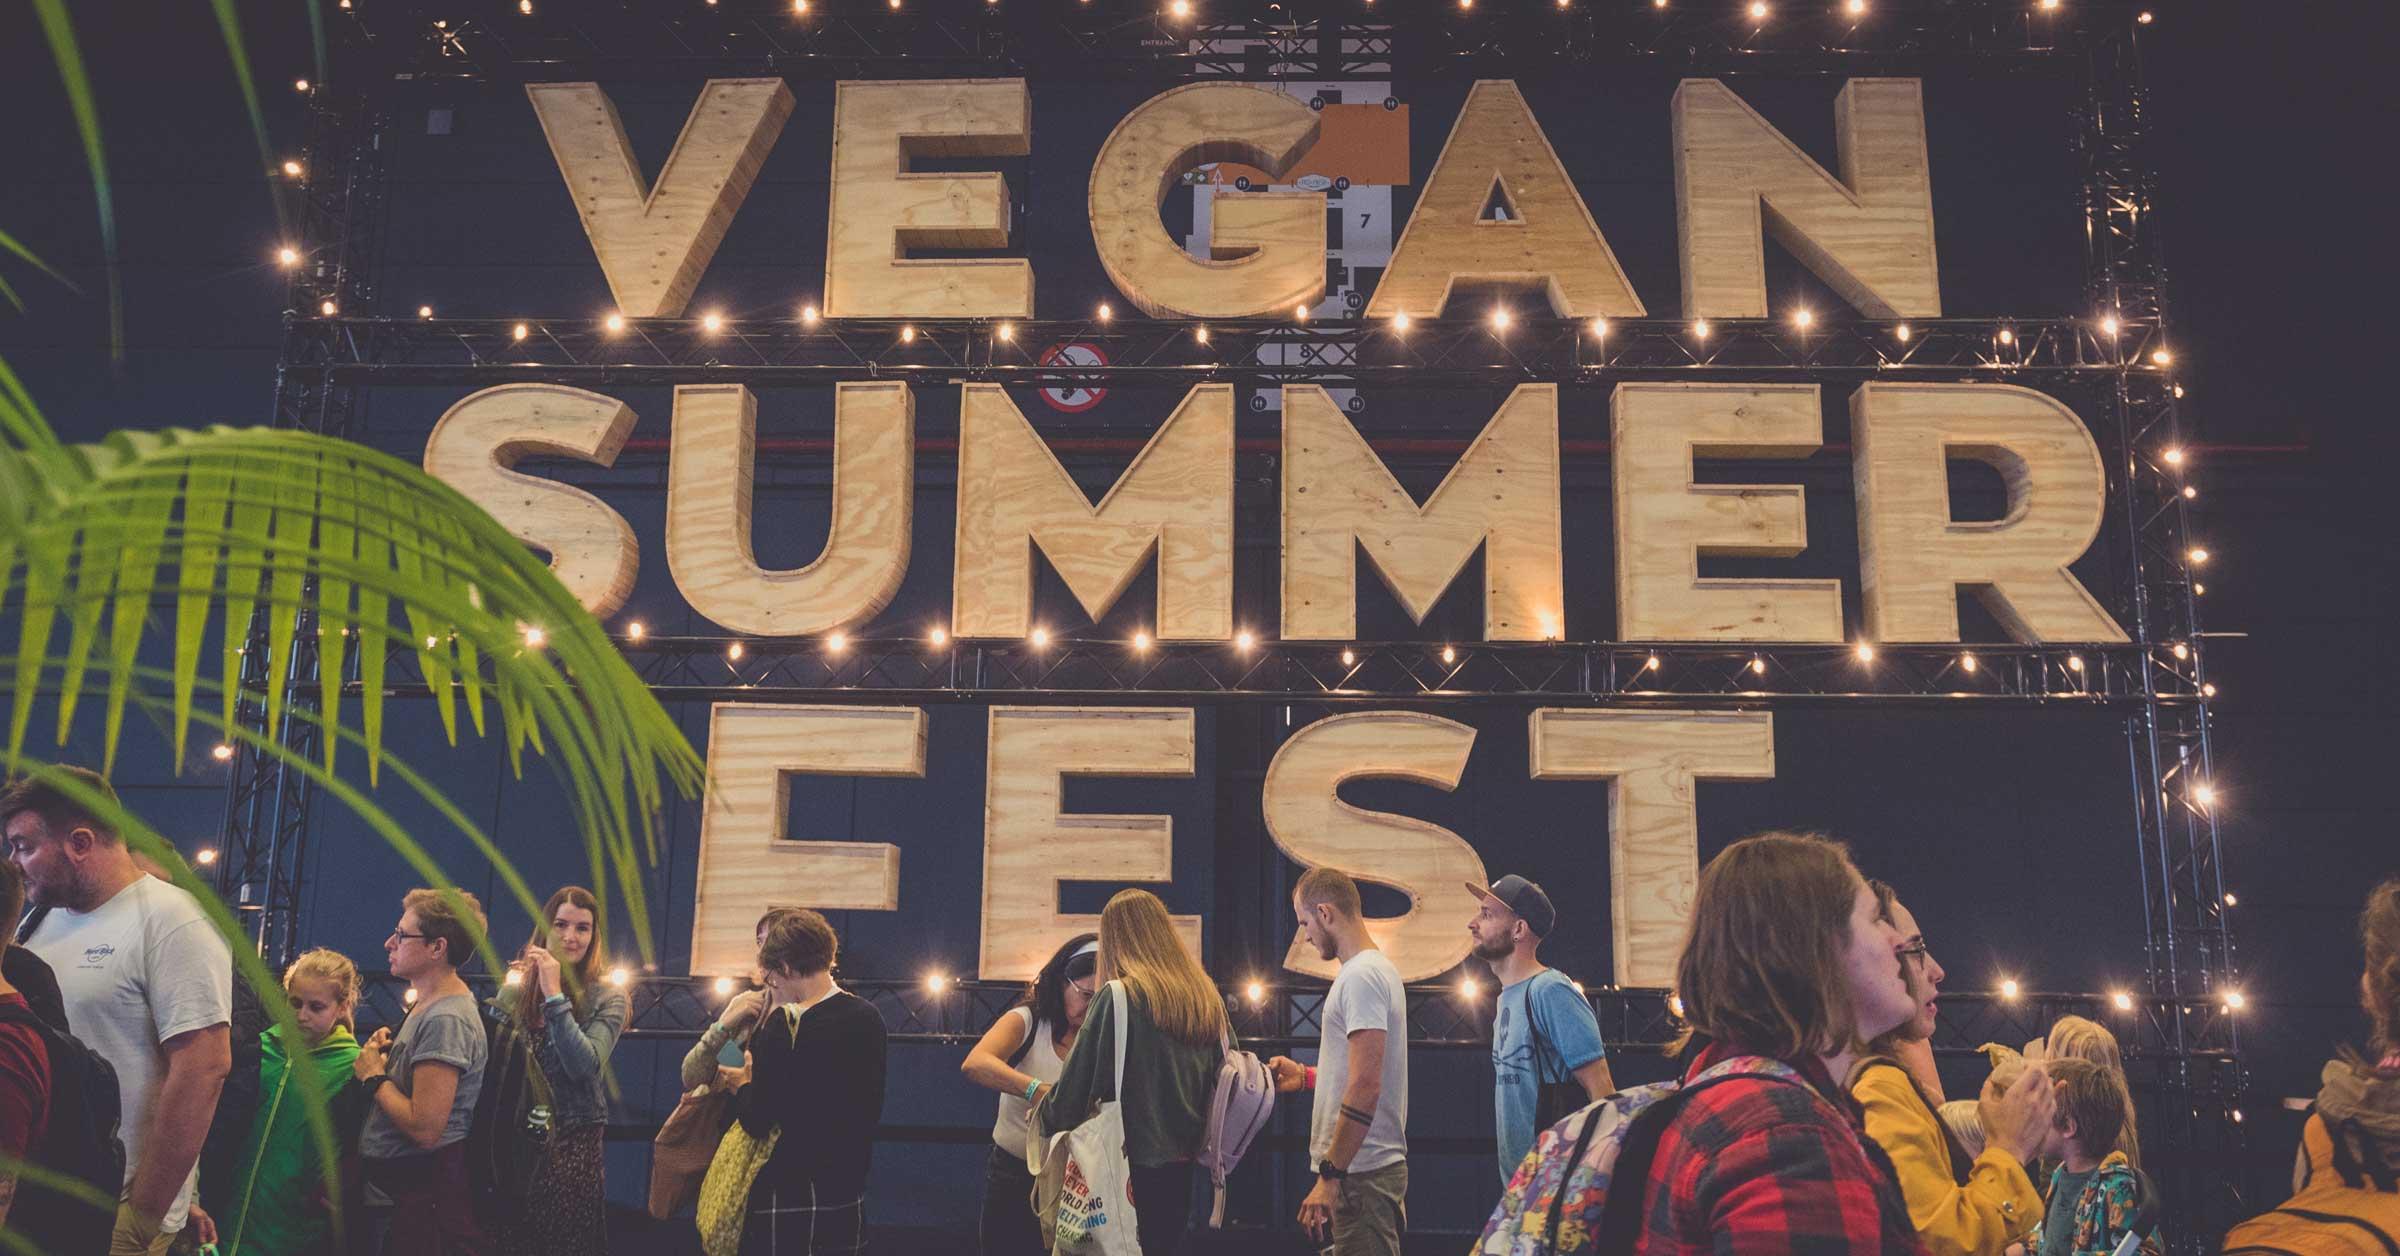 Vegan Summer Fest is de plek waar je vegan eten smult